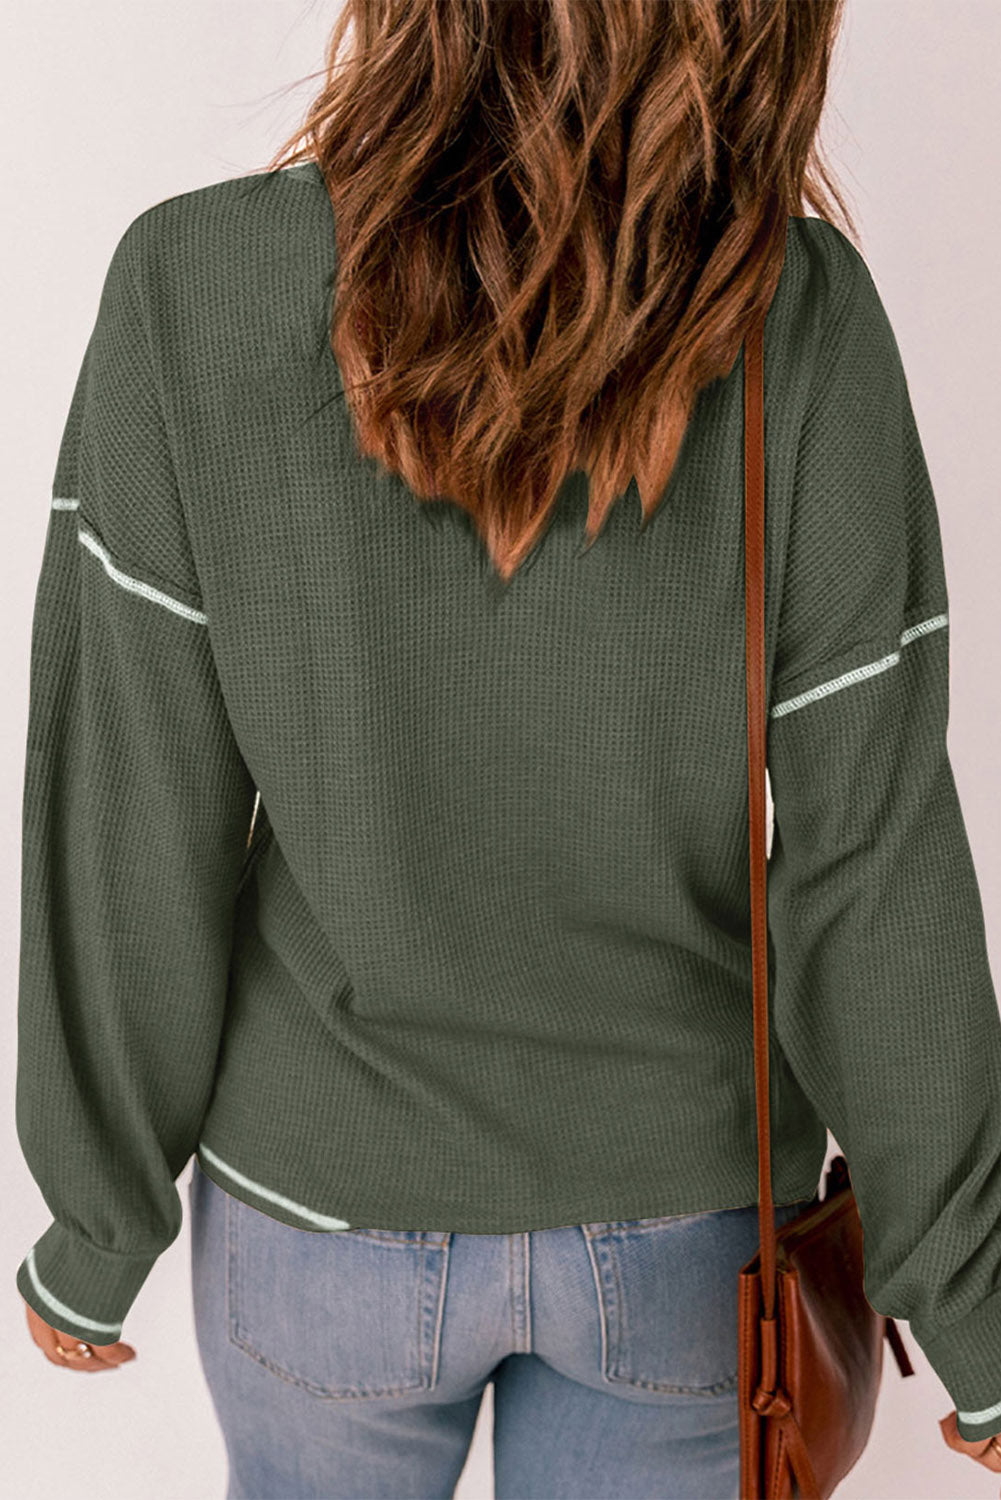 Vafelj pletena majica z izpostavljenimi šivi v megleno zelenem kontrastu